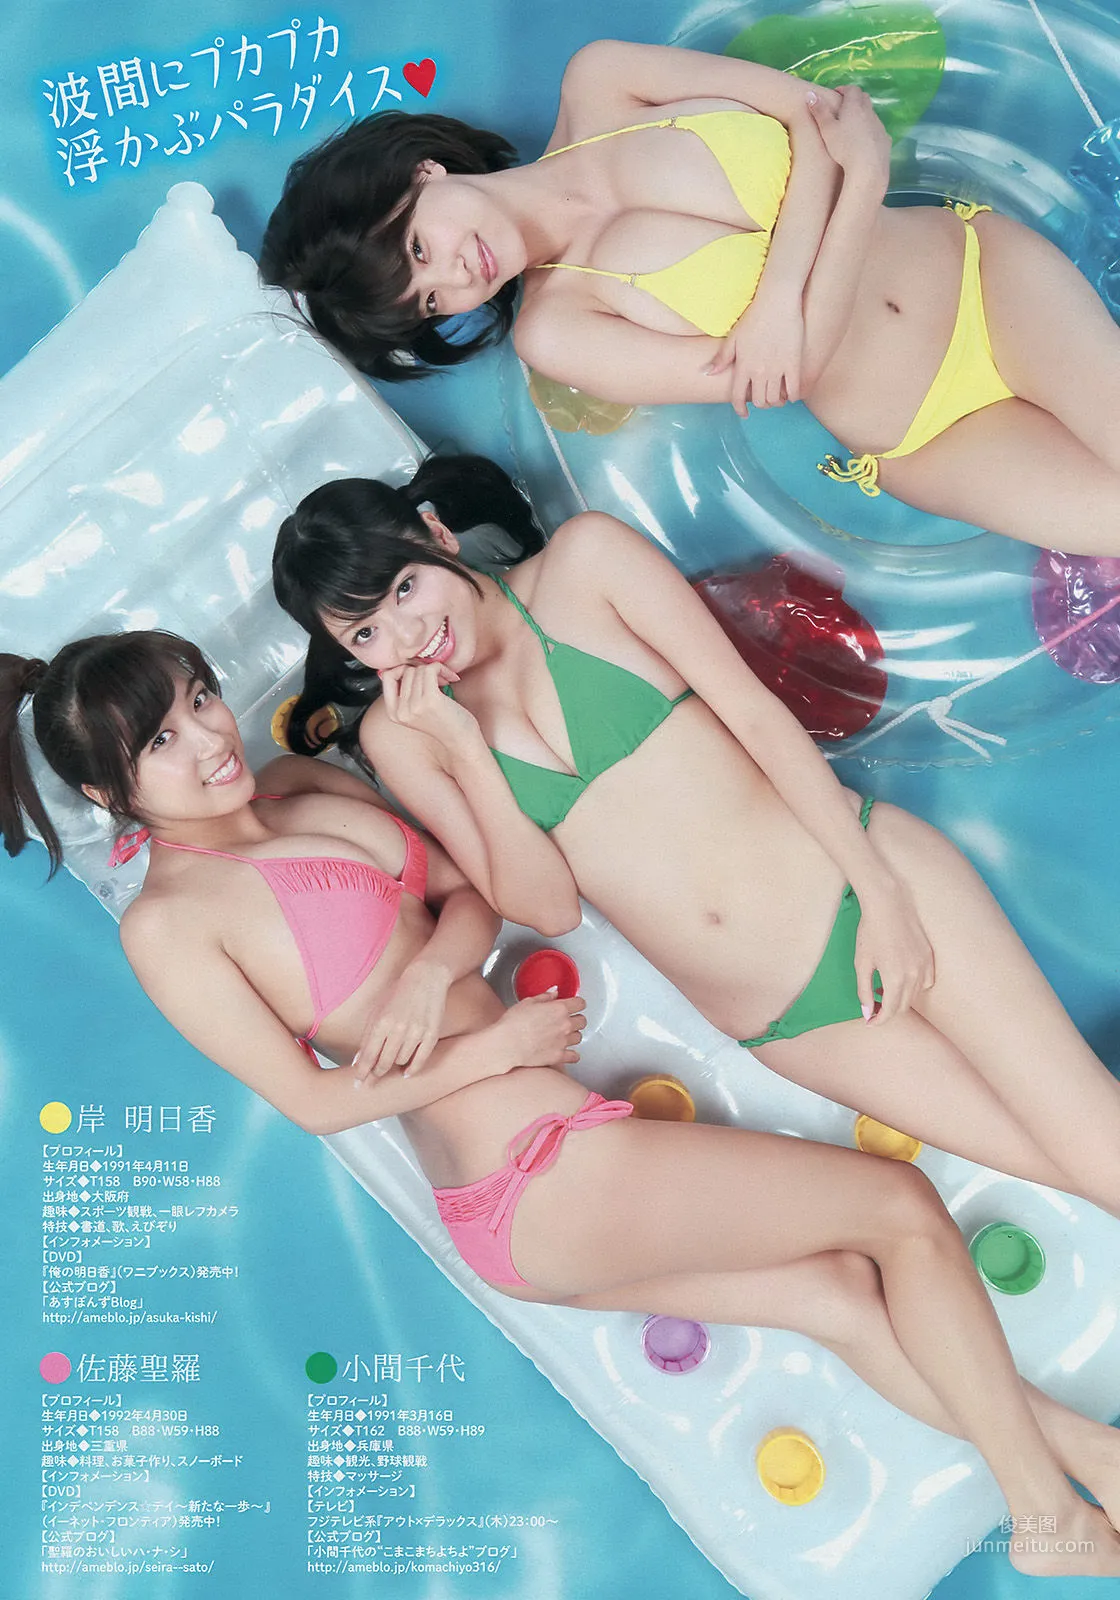 [Young Magazine] 中村静香 さいとうまりな 2014年No.36-37 写真杂志3